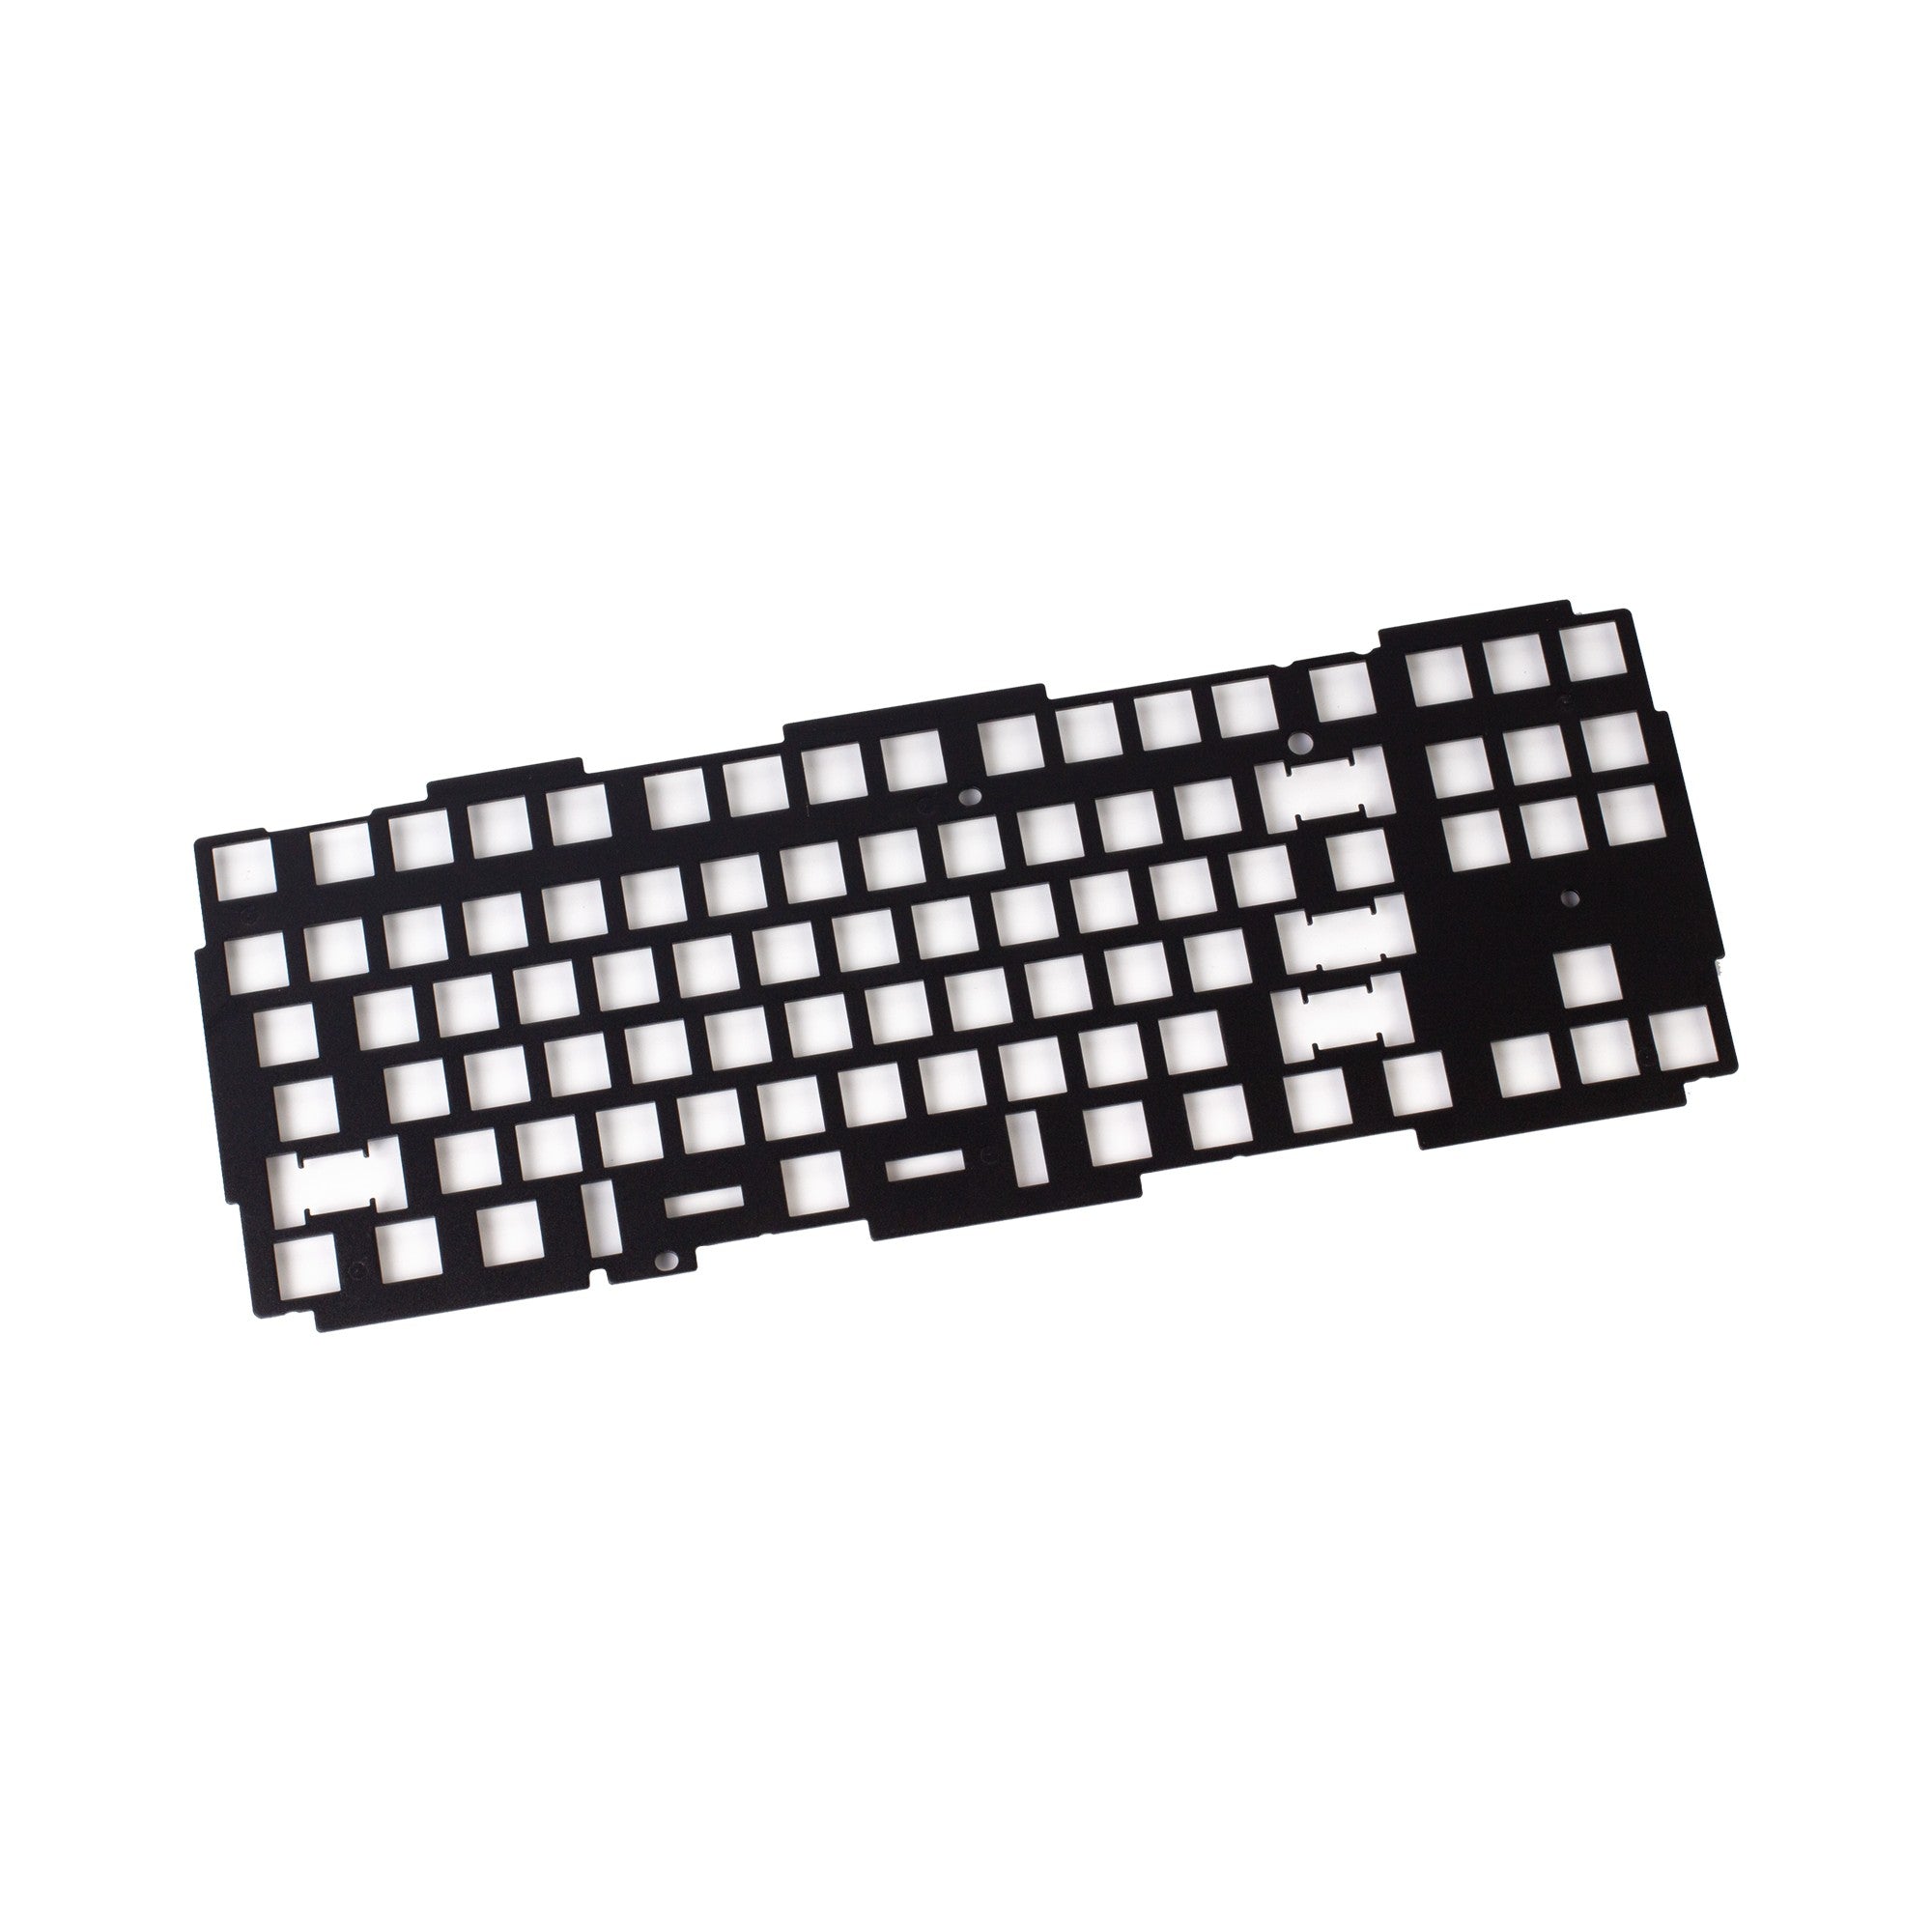 Keychron Q3 keyboard knob FR4 plate ANSI layout